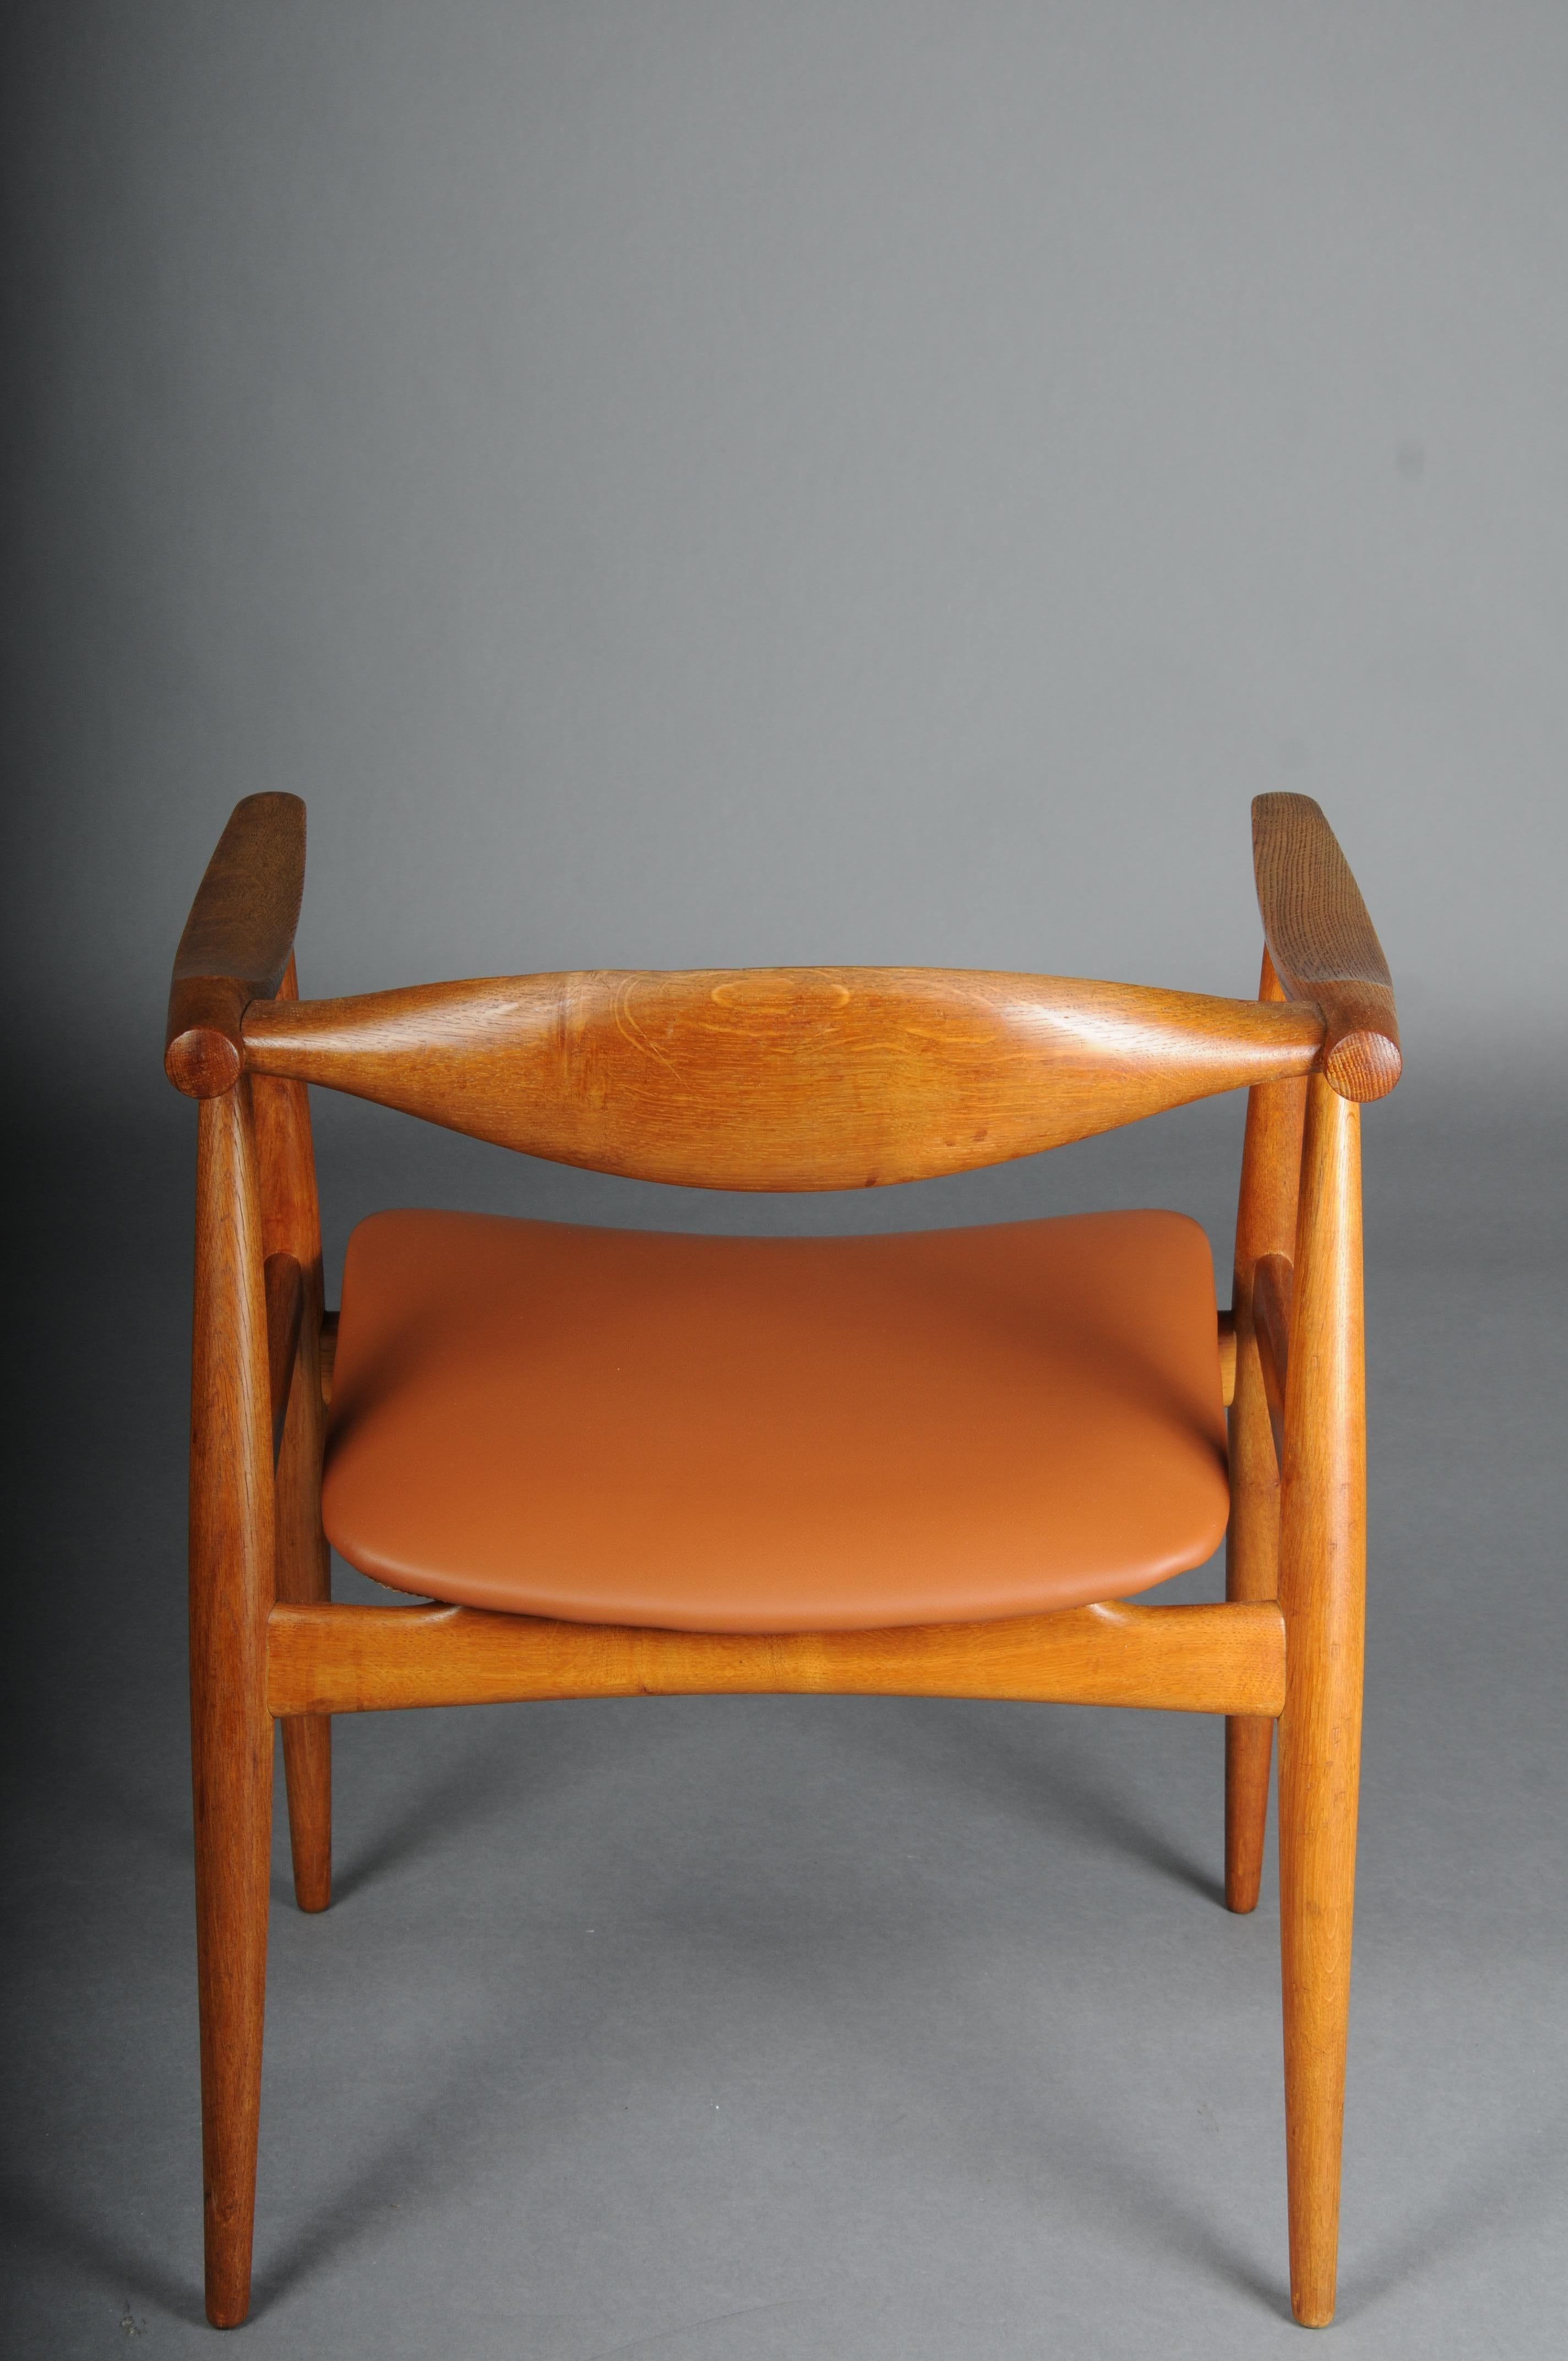 HANS J. WEGNER. Armchair, Teak/leather, Model CH-35, Carl Hansen & Son, Denmark. For Sale 2